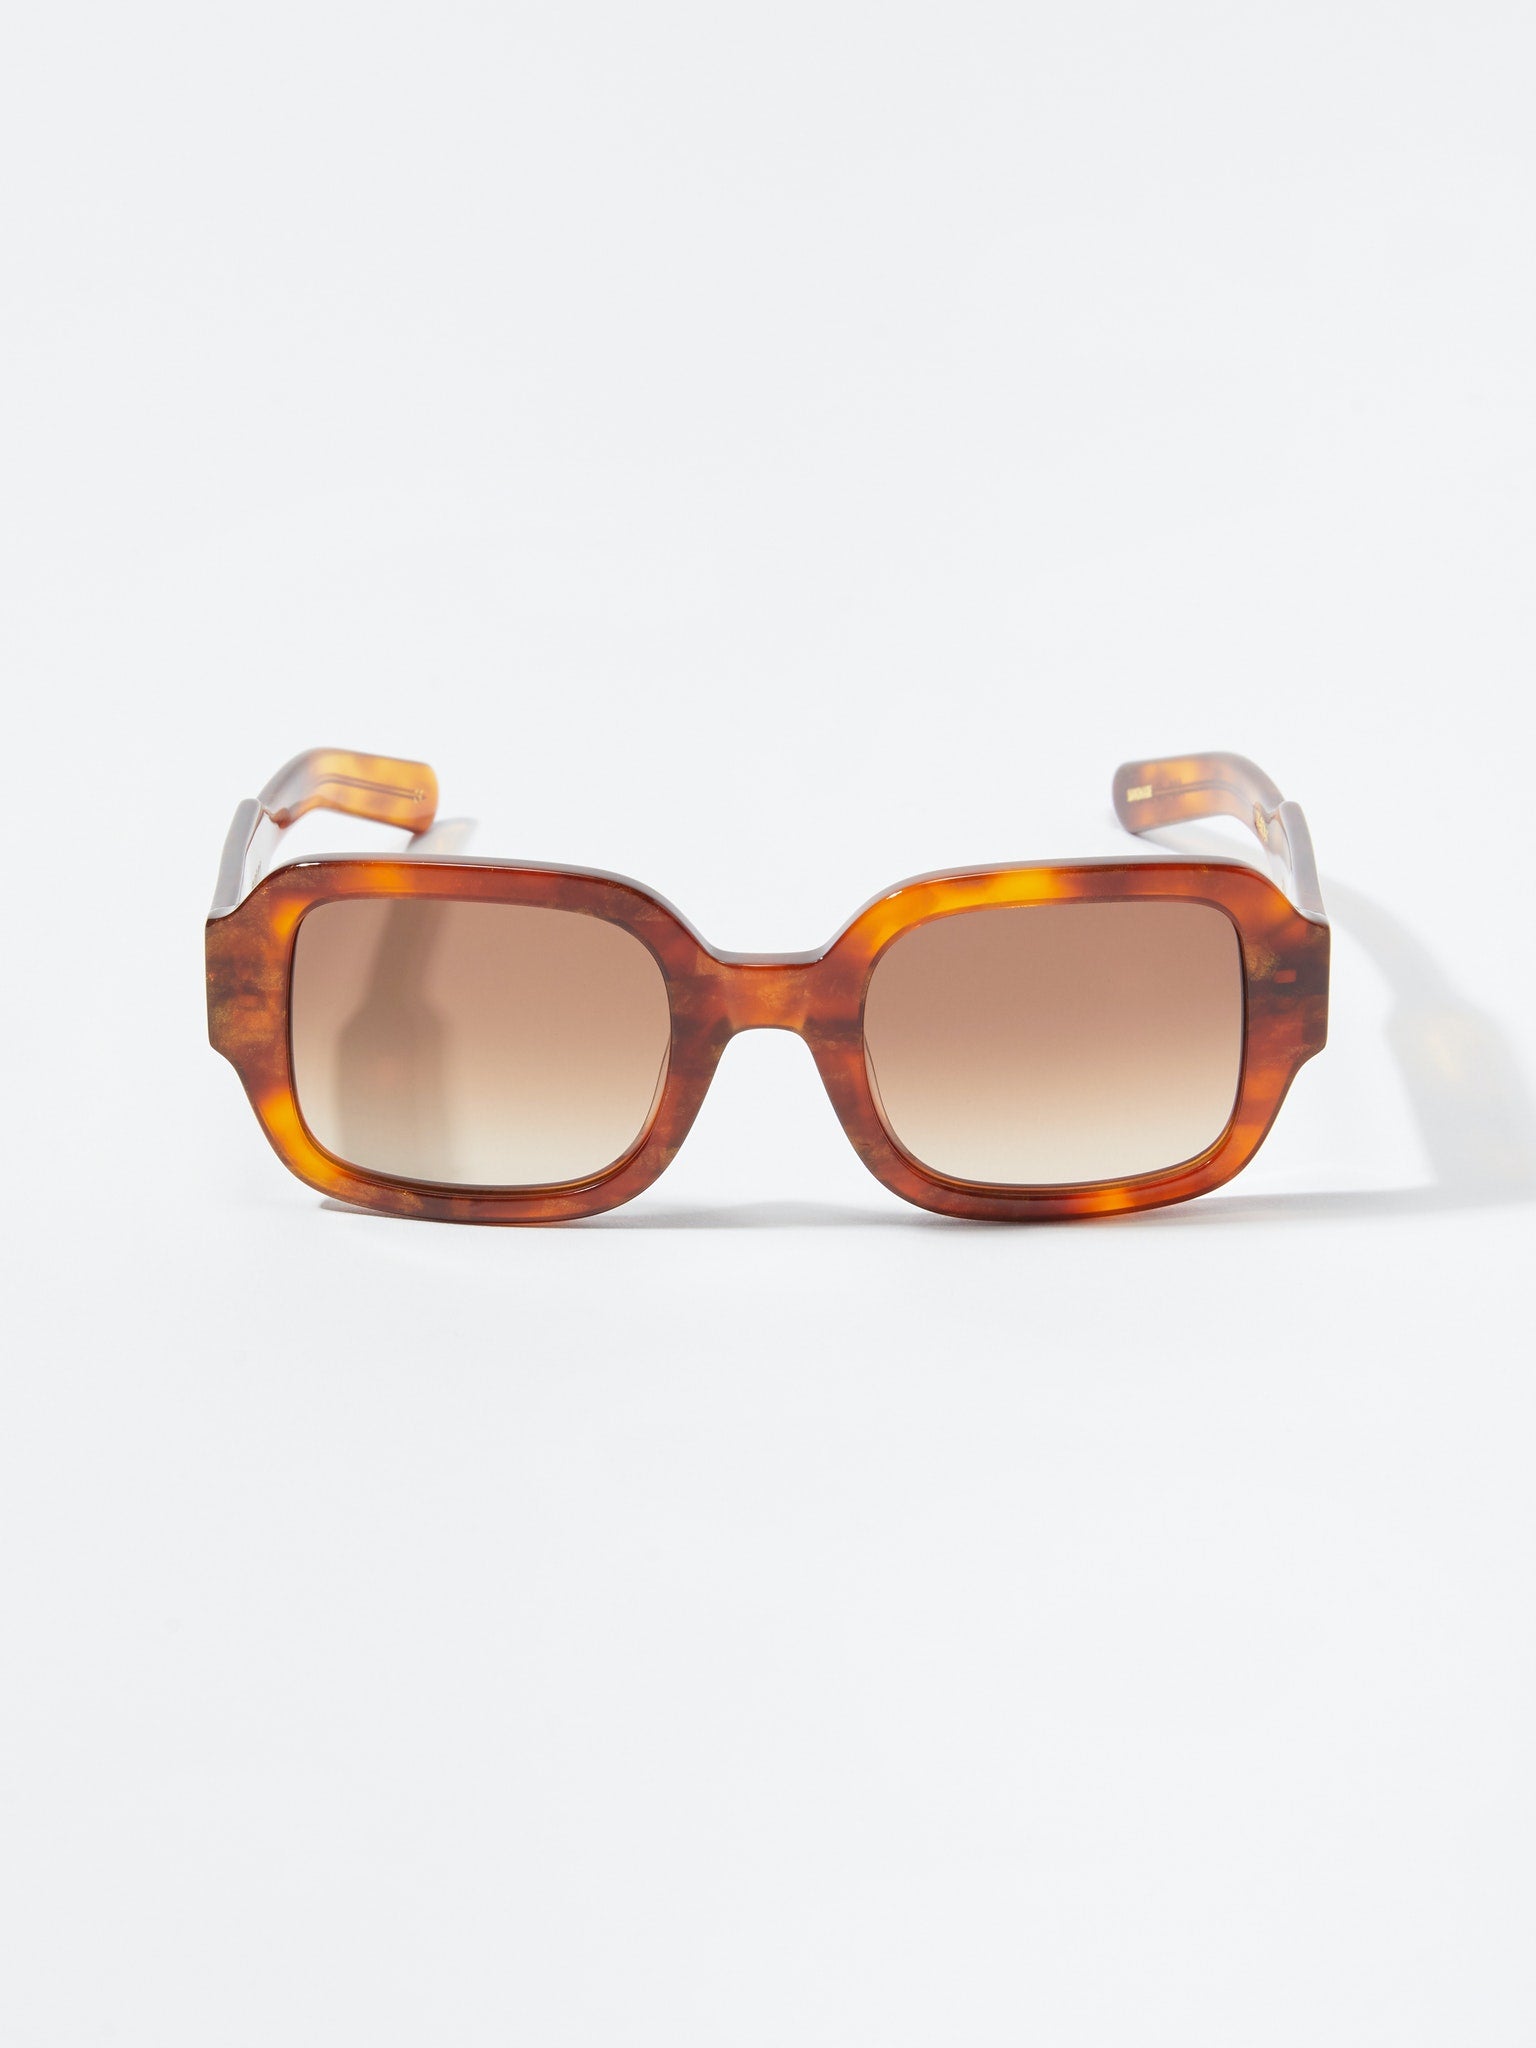 Flatlist + Tishkoff Square Sunglasses